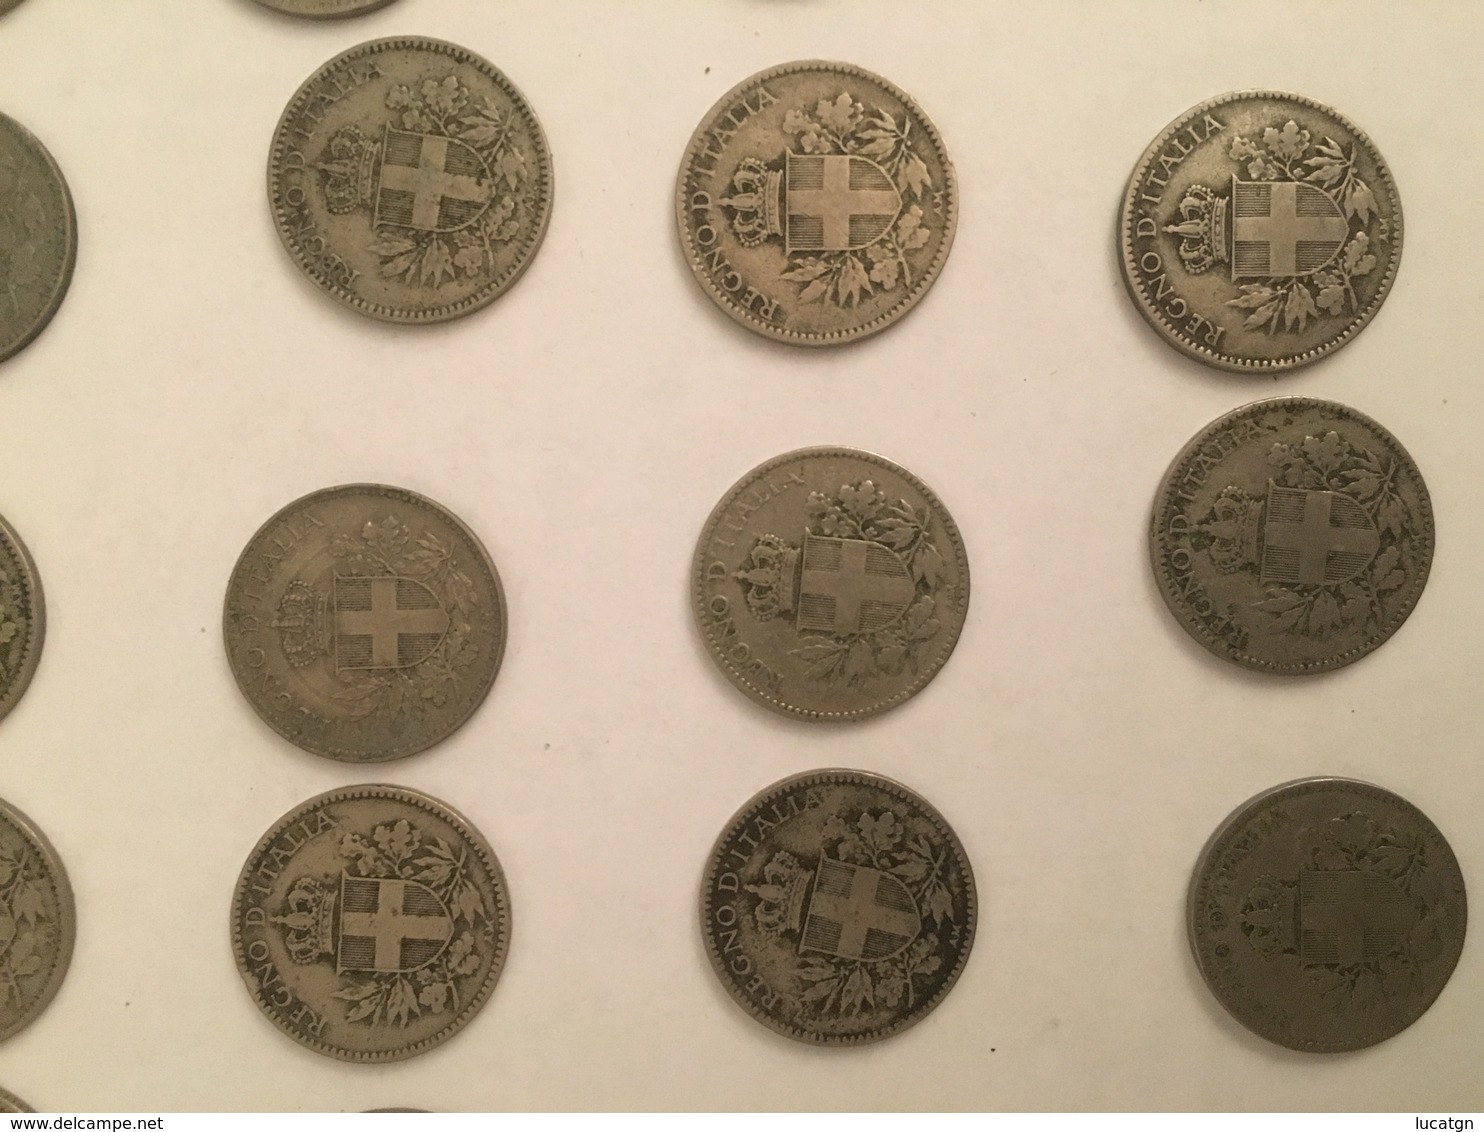 Lotto di 31 monete da 20 centesimi Esagono. Anni 1918/1919